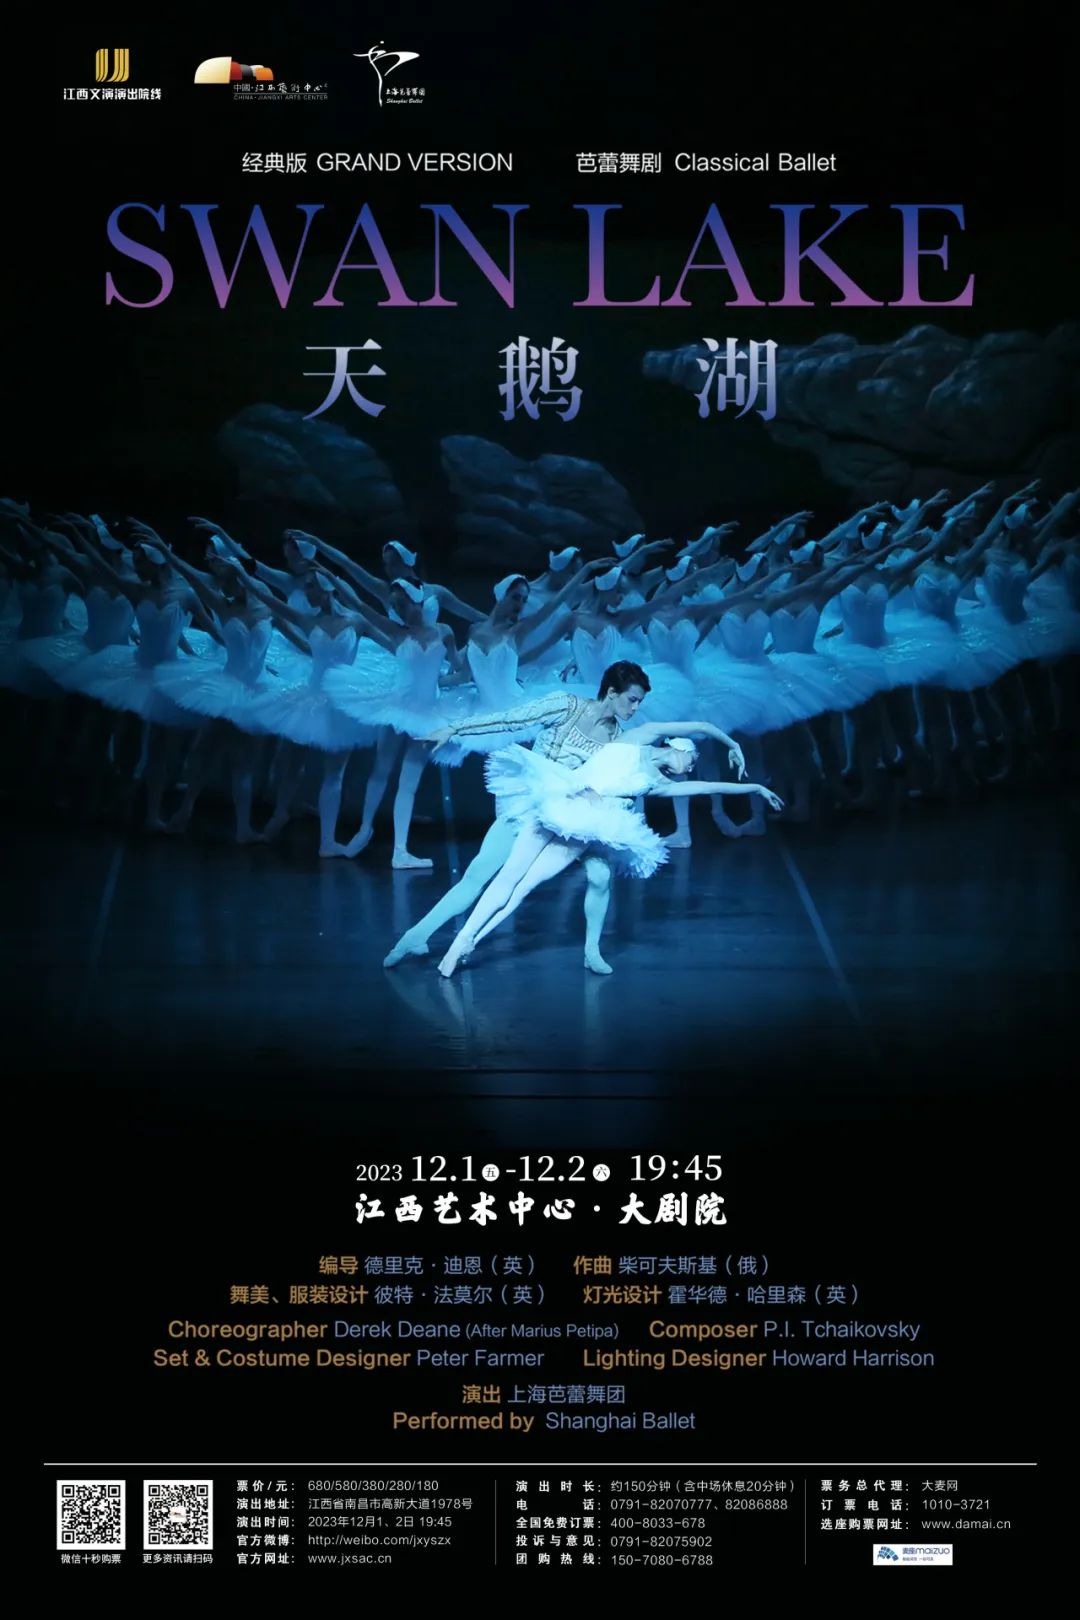 我校举办芭蕾舞剧“天鹅湖”专场演出 - 文化新闻 - 中国科学技术大学_历史文化网